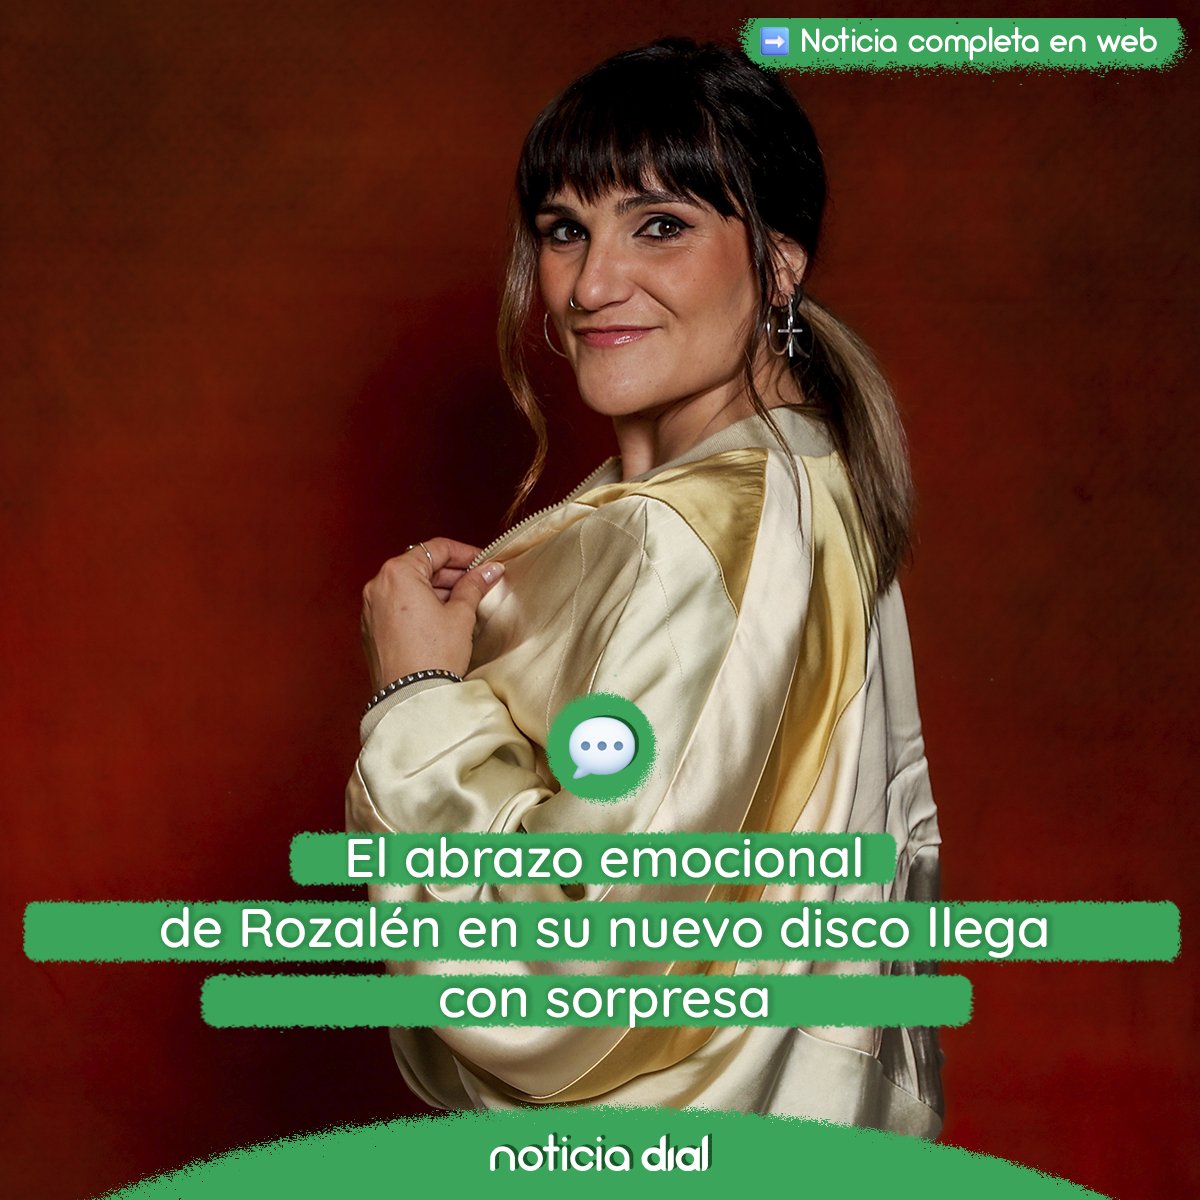 El abrazo emocional de Rozalén en su nuevo disco llega con sorpresa @rozalenmusic 🔗cdial.es/1vldw2